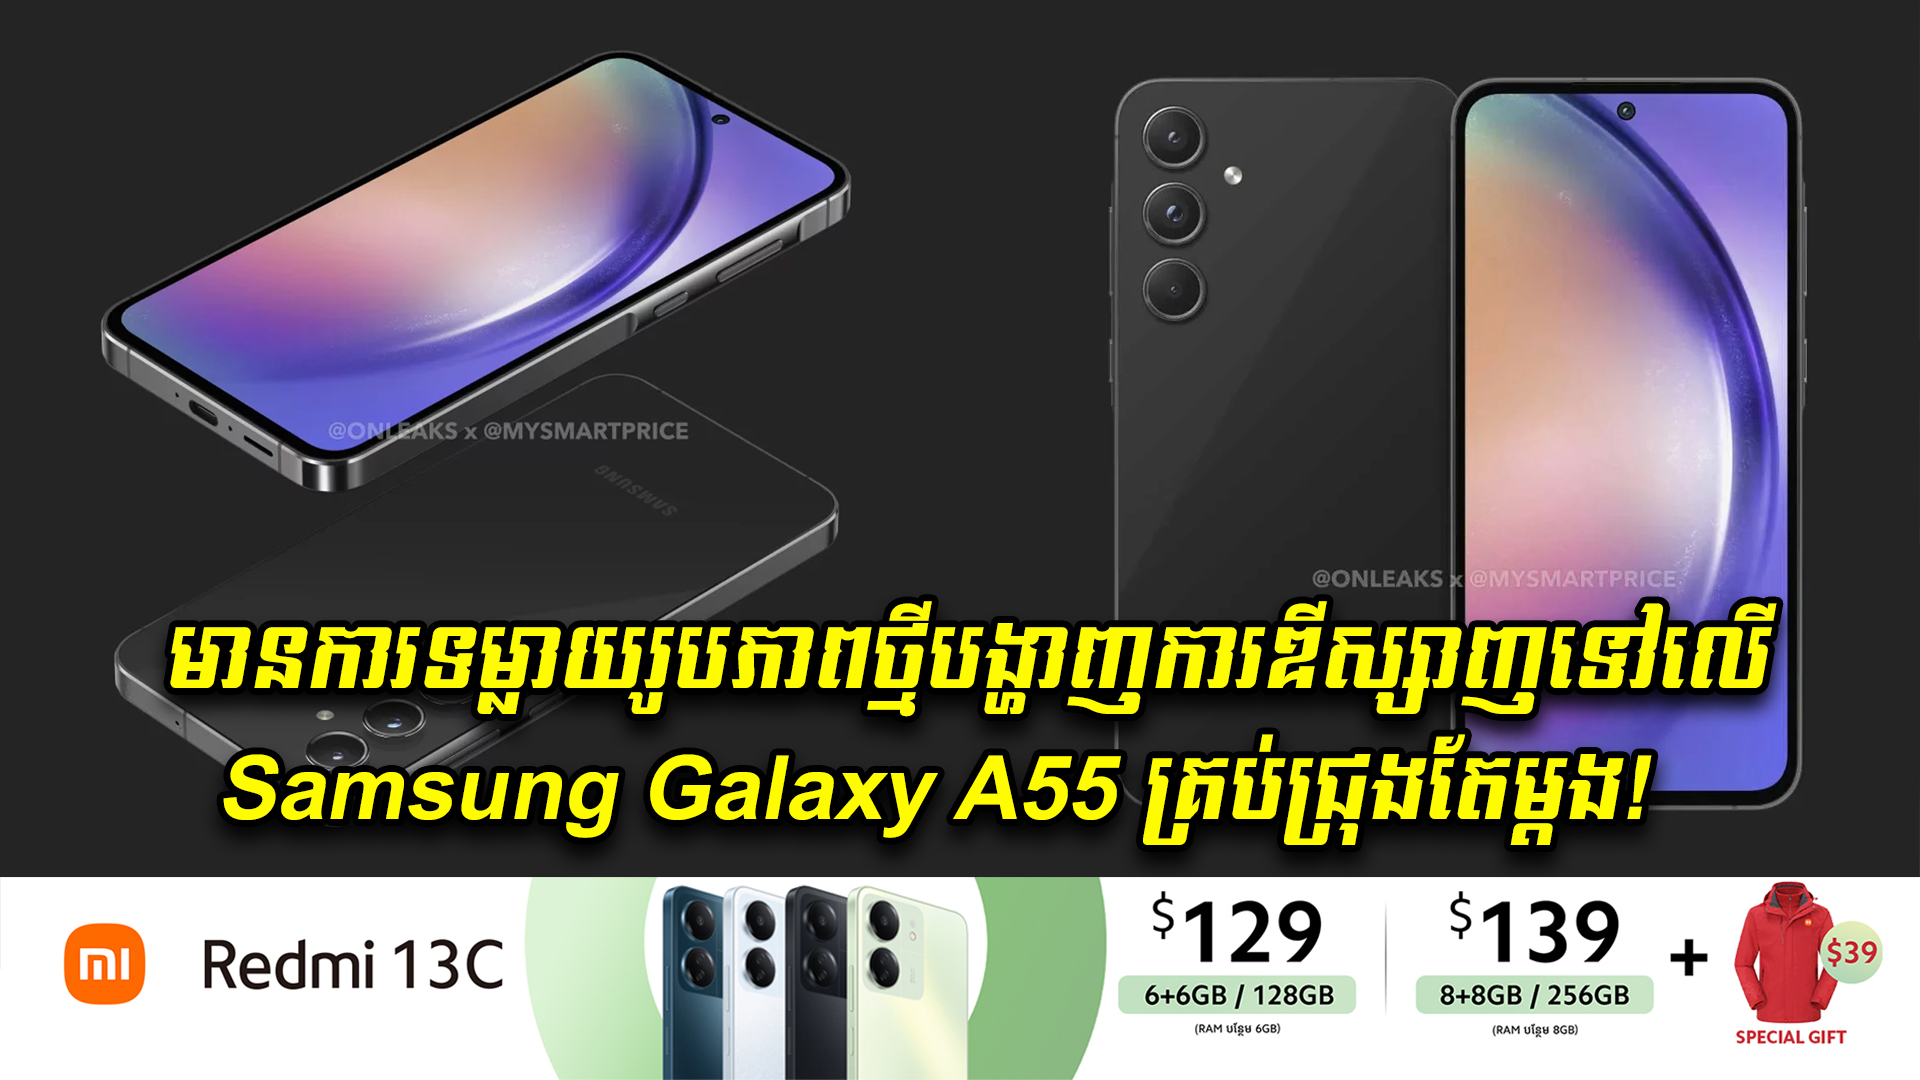 មានការទម្លាយរូបភាពថ្មីបង្ហាញការឌីស្សាញទៅលើ Samsung Galaxy A55 គ្រប់ជ្រុងតែម្តង!